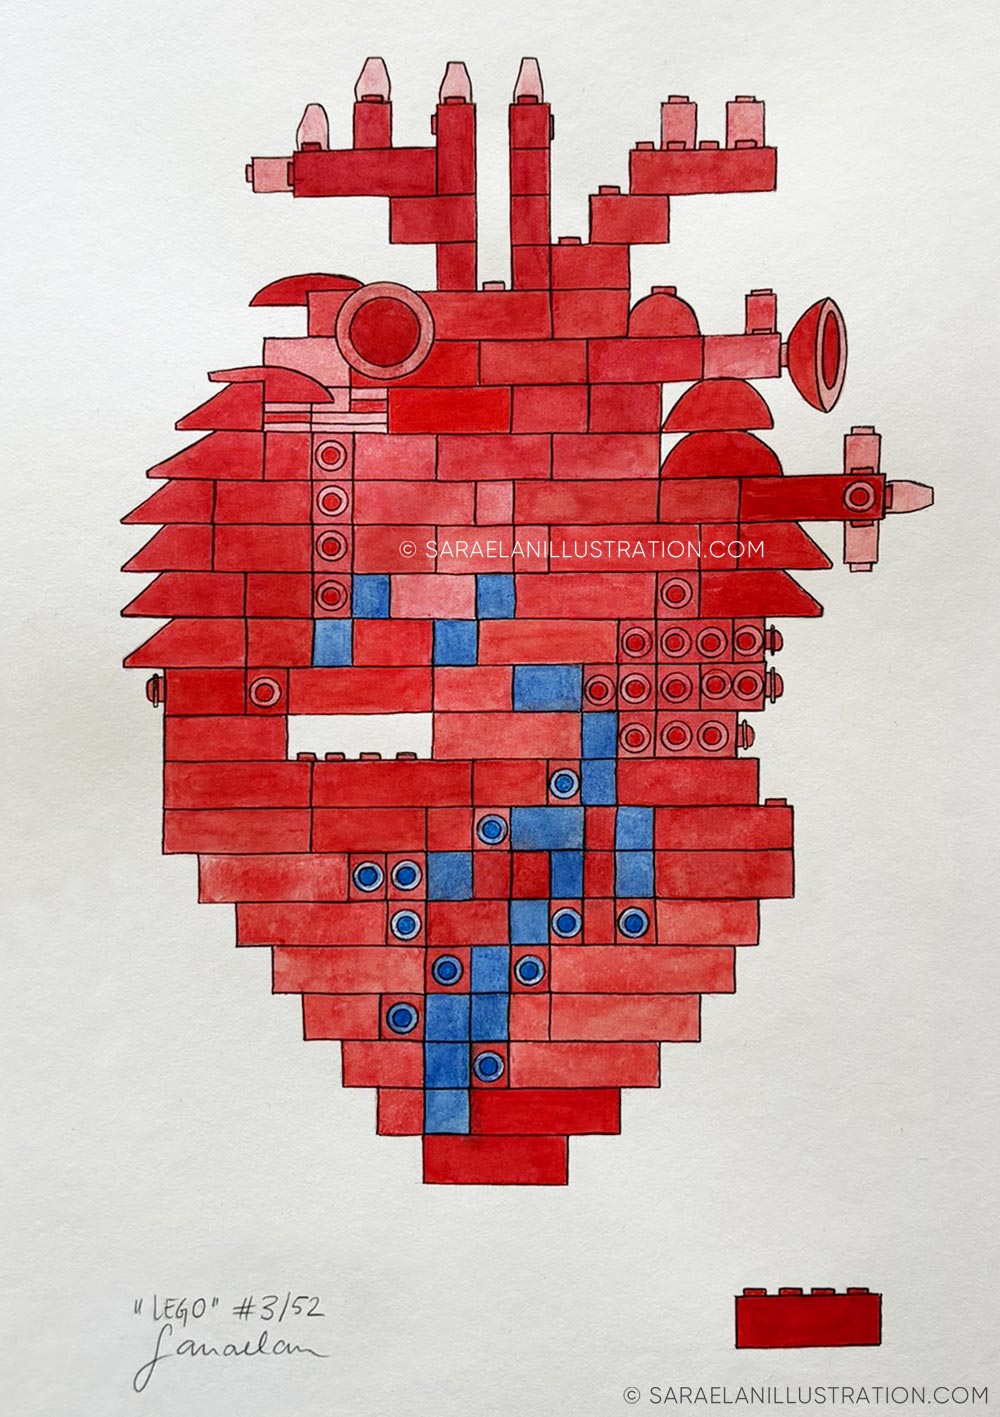 Disegno di un cuore anatomico fatto con veri pezzi di LEGO creato per Inktober52